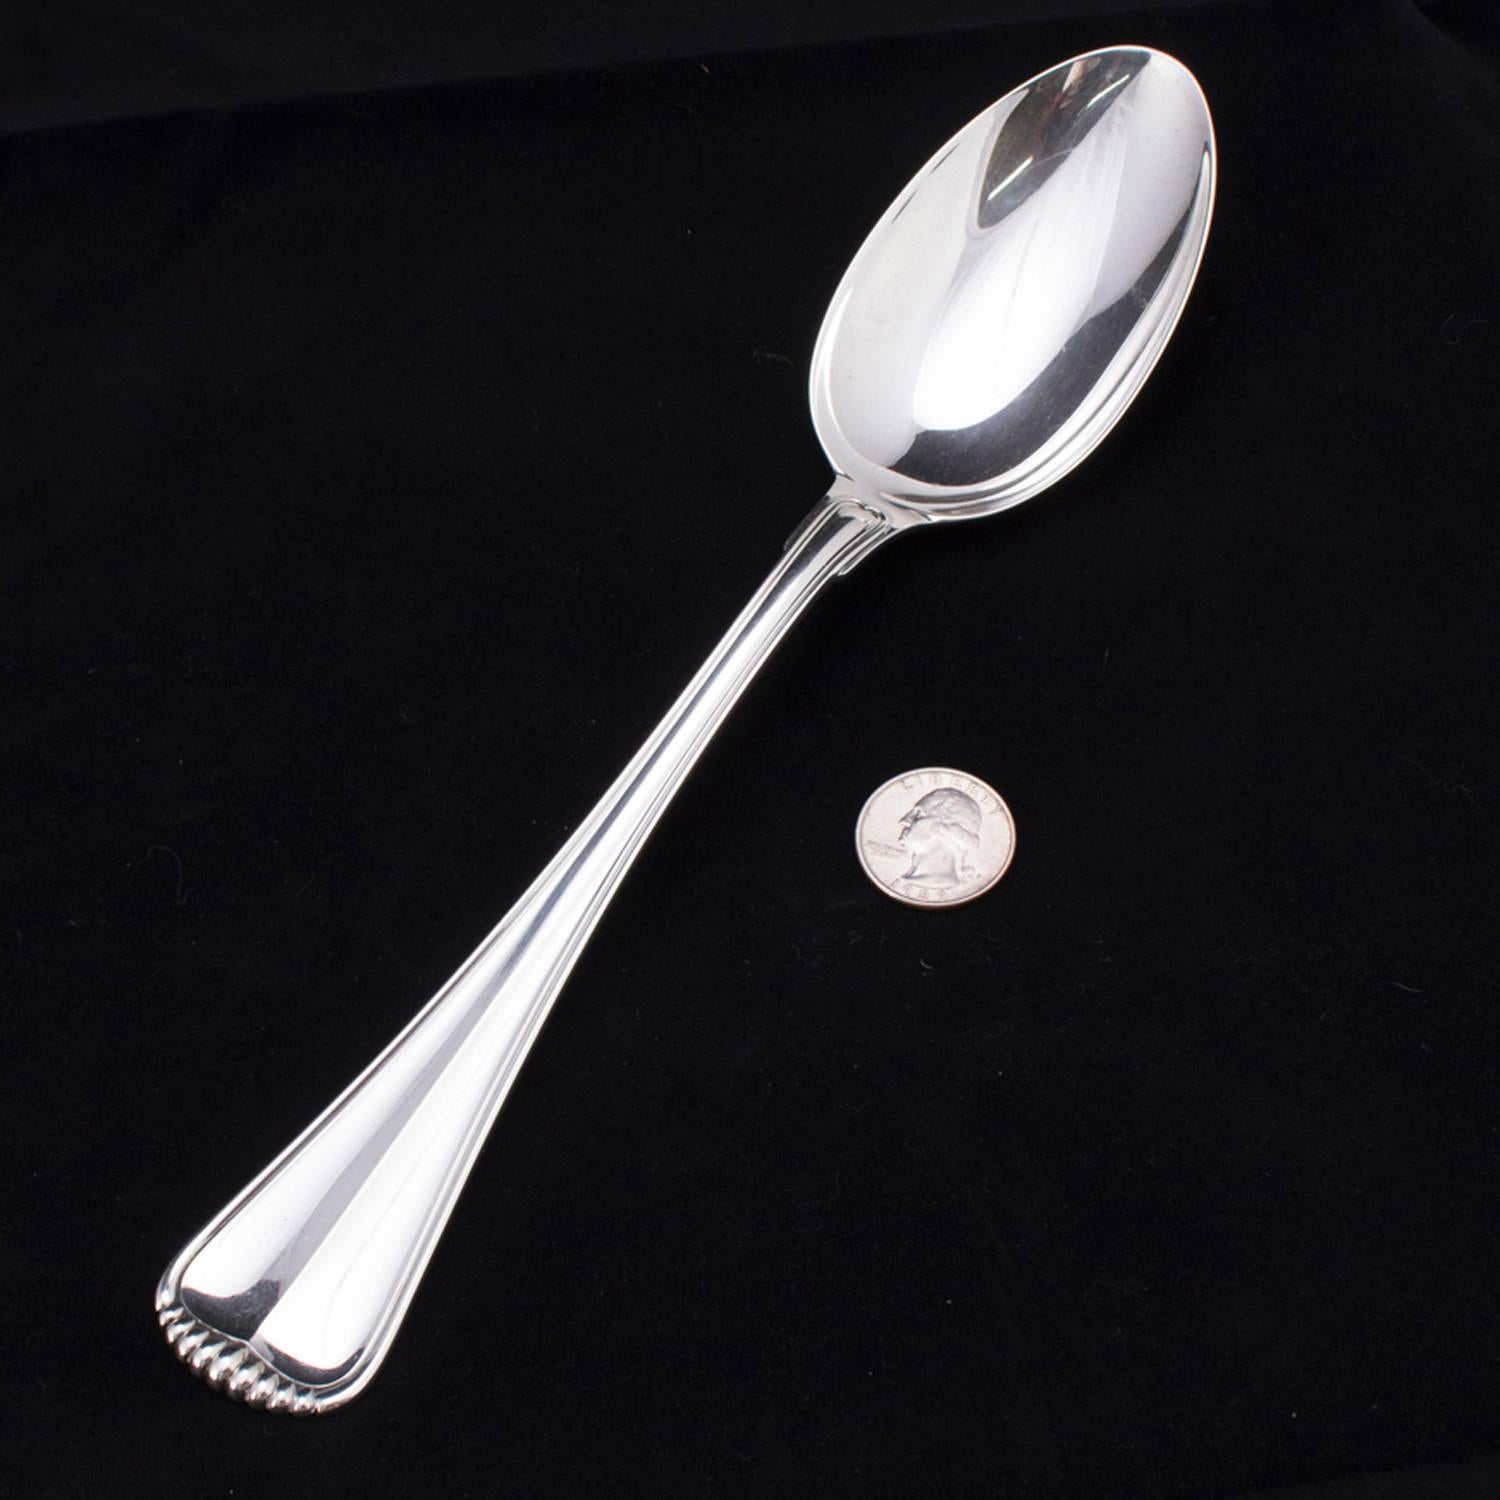 20th Century Italian Buccellati Milano Sterling Silver Serving Spoon, 4.18 toz, circa 1930